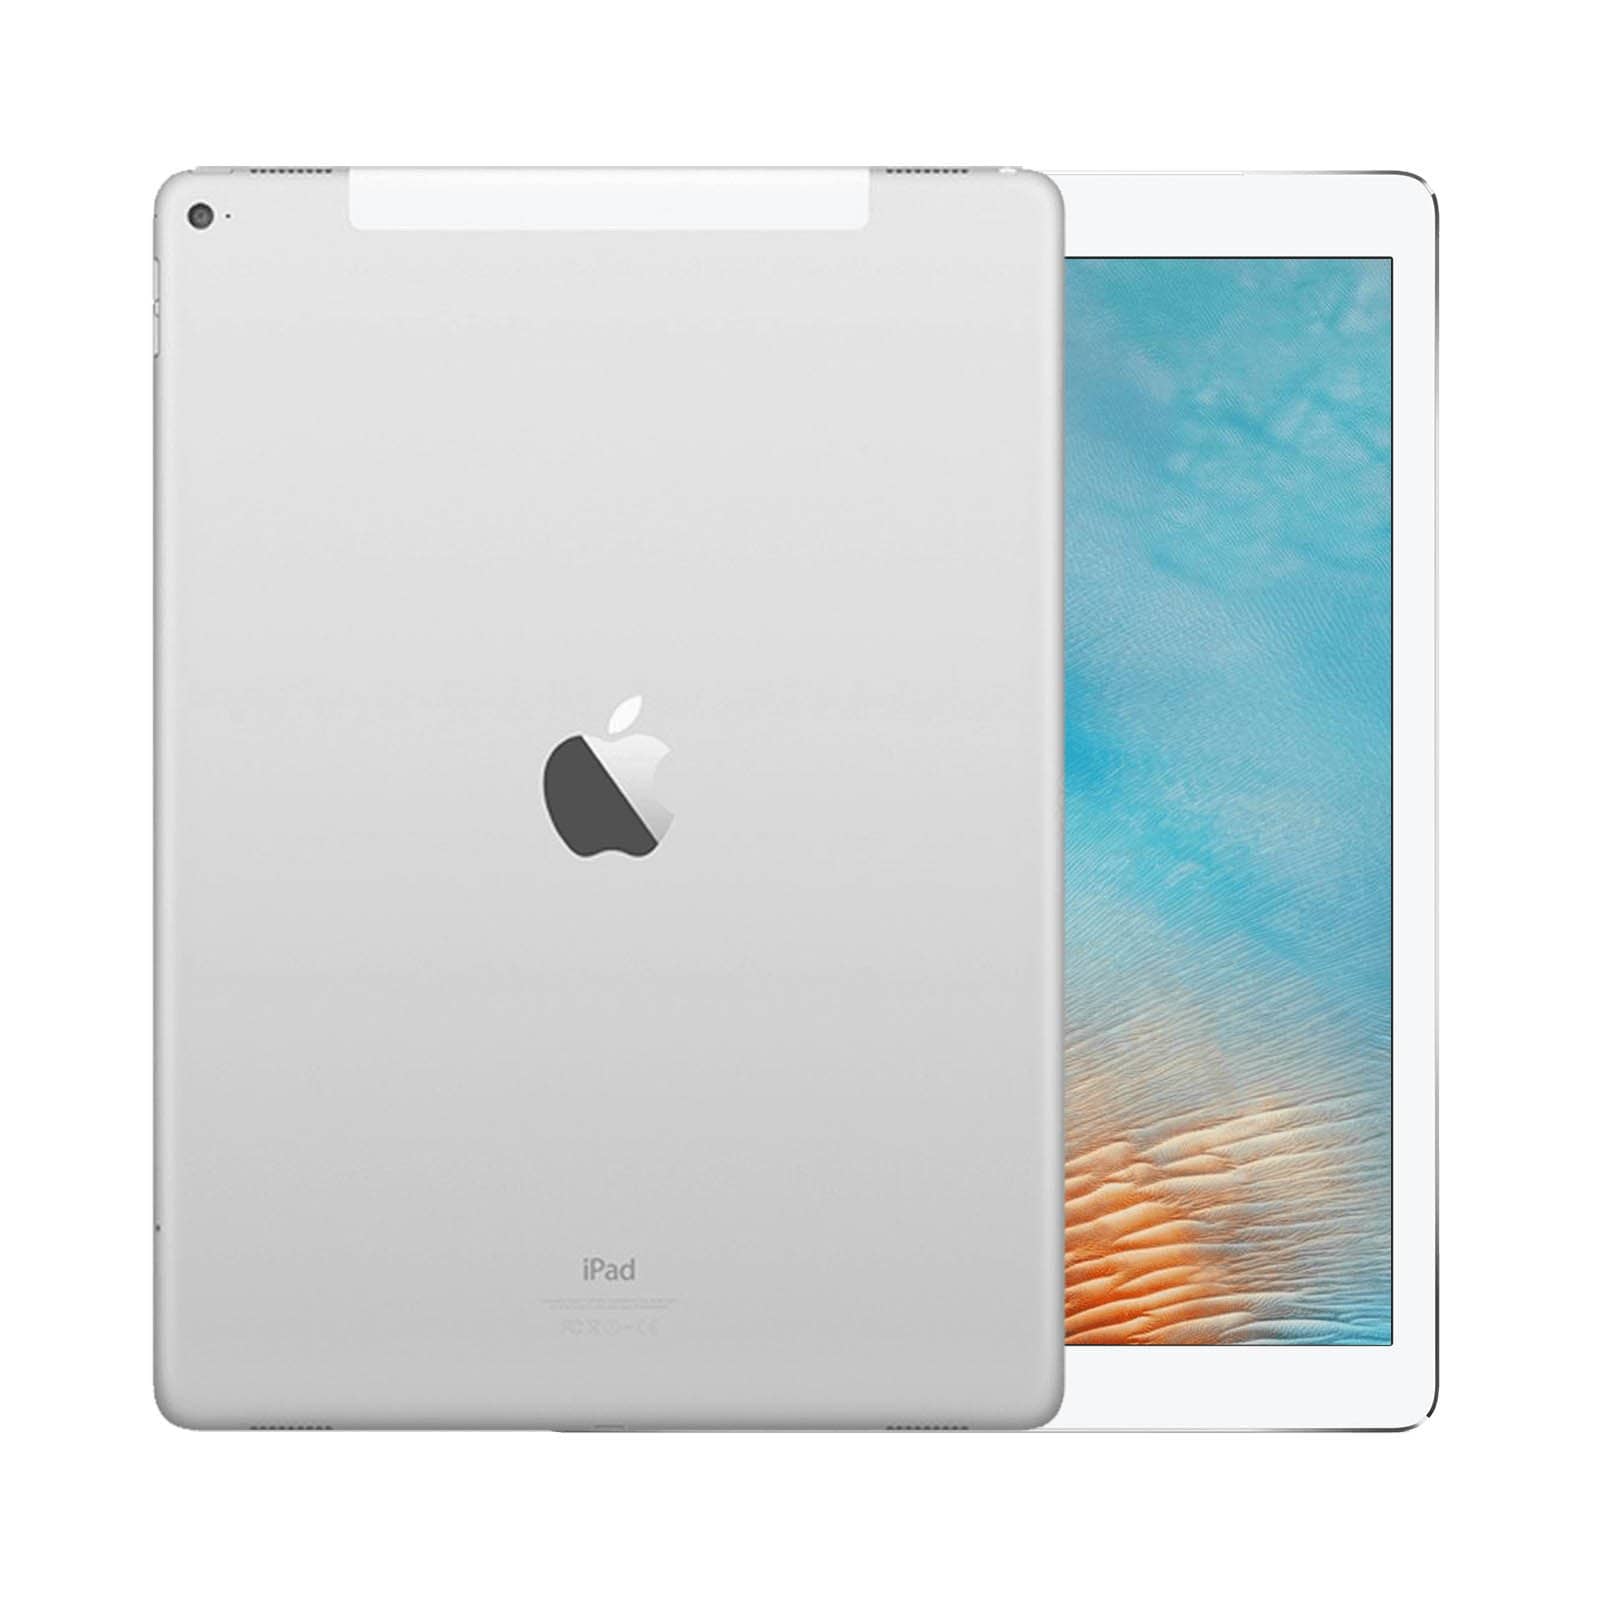 iPad Pro 12.9 Inch 2nd Gen 512GB Silver Pristine - WiFi 512GB Silver Pristine